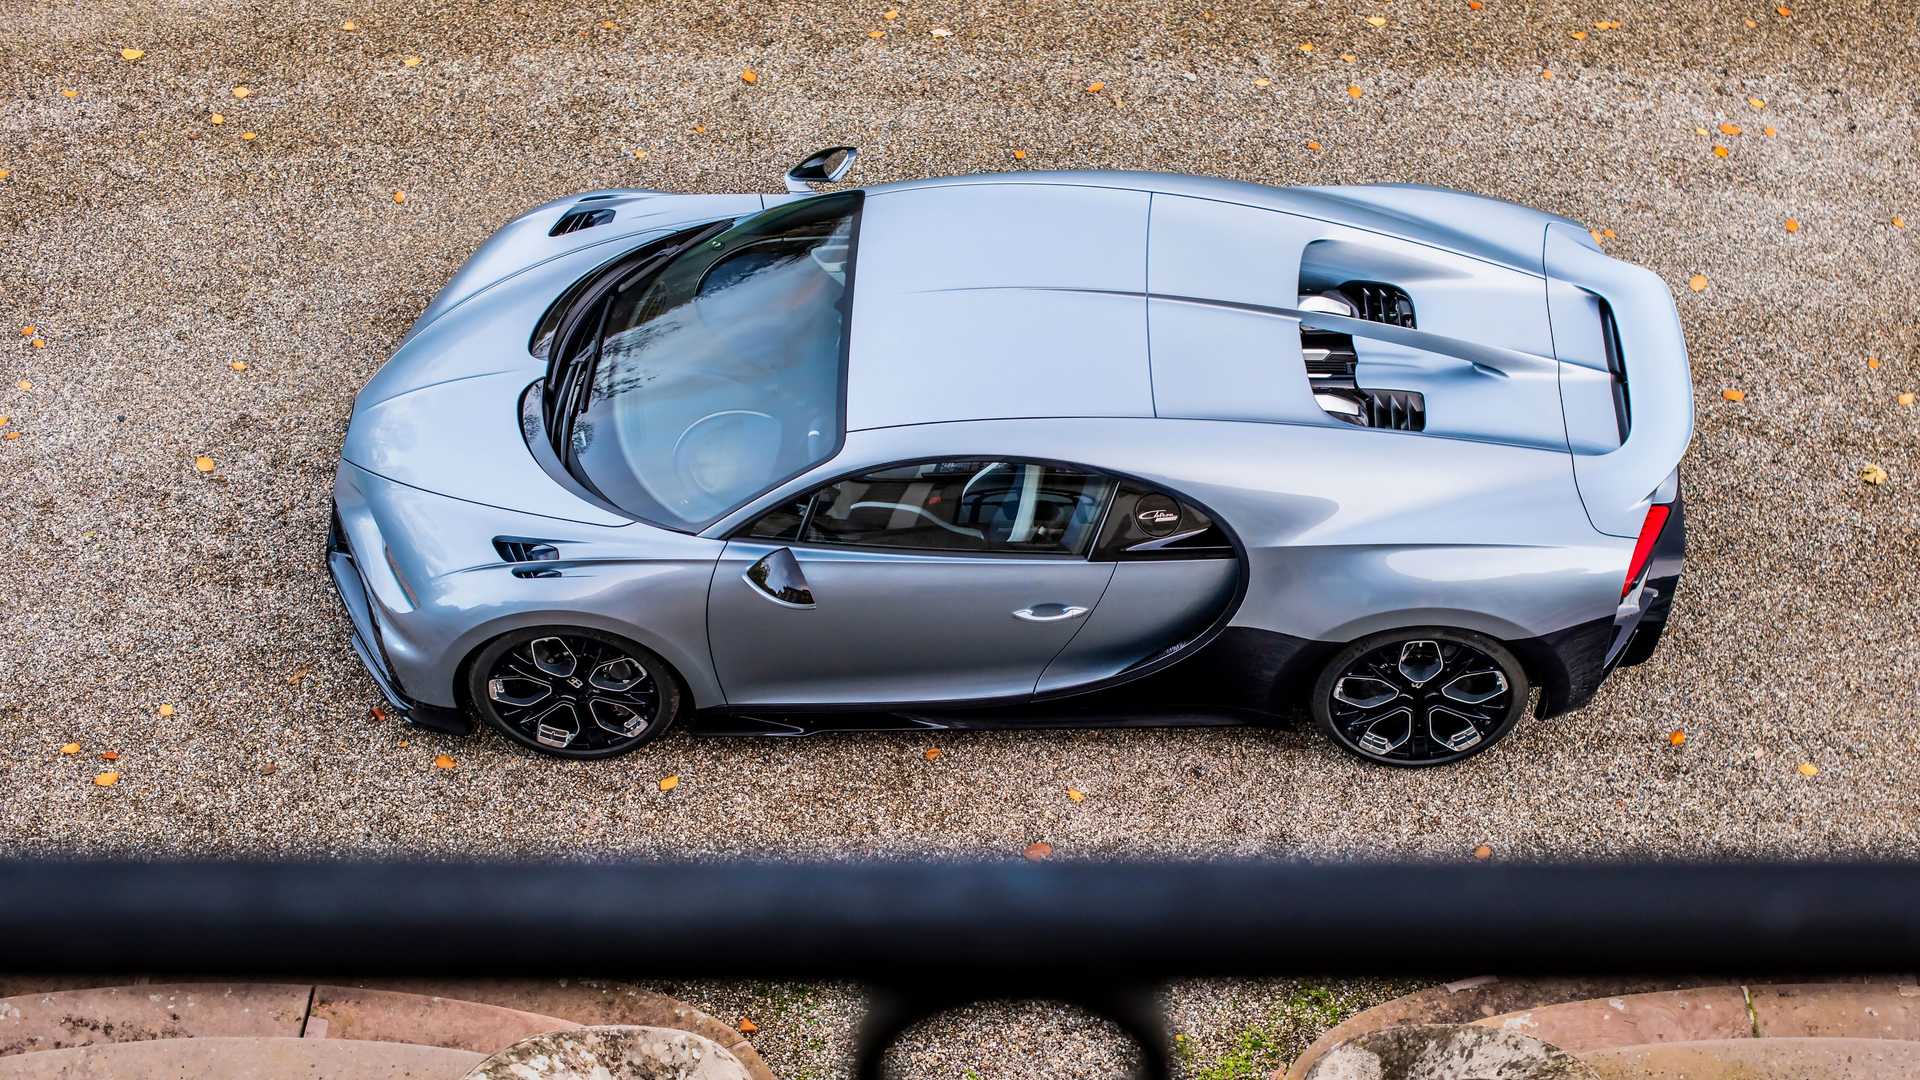 Vì sao Bugatti nói chỉ làm 500 chiếc Chiron nhưng lại có chiếc thứ 501? - Ảnh 1.